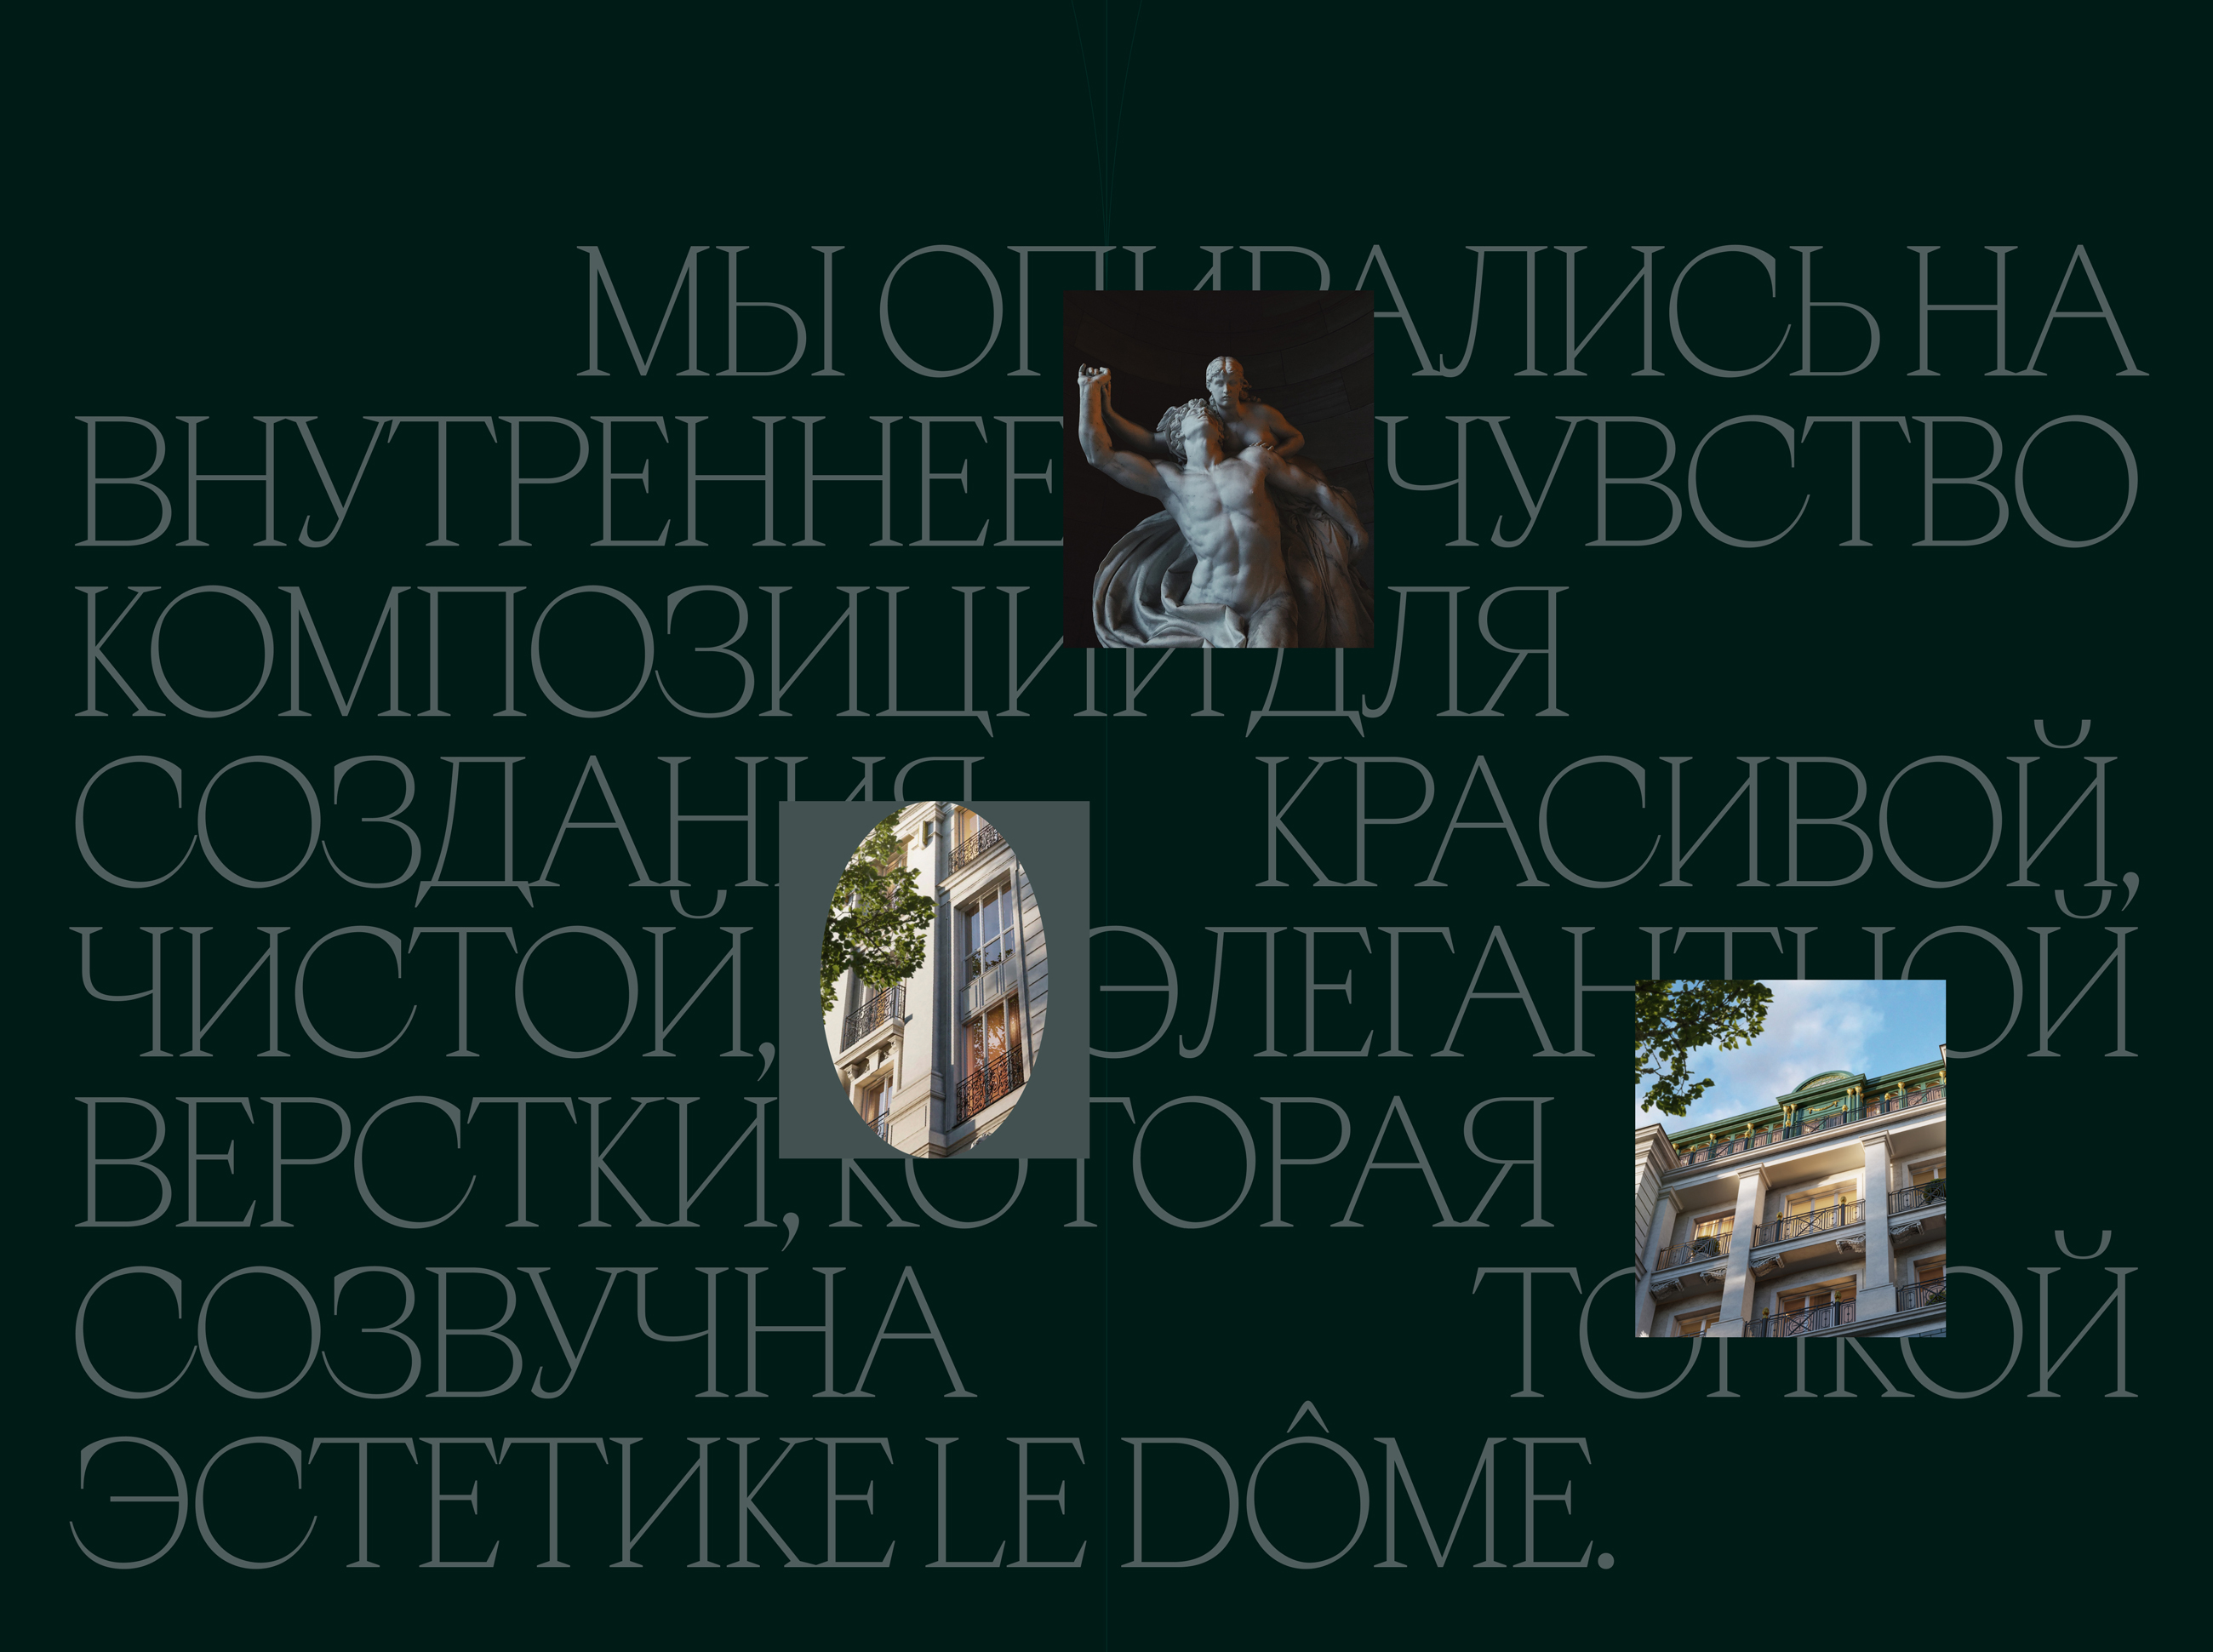 Le Dôme | Промо-сайт для клубного дома делюкс-класса — Изображение №5 — Интерфейсы на Dprofile